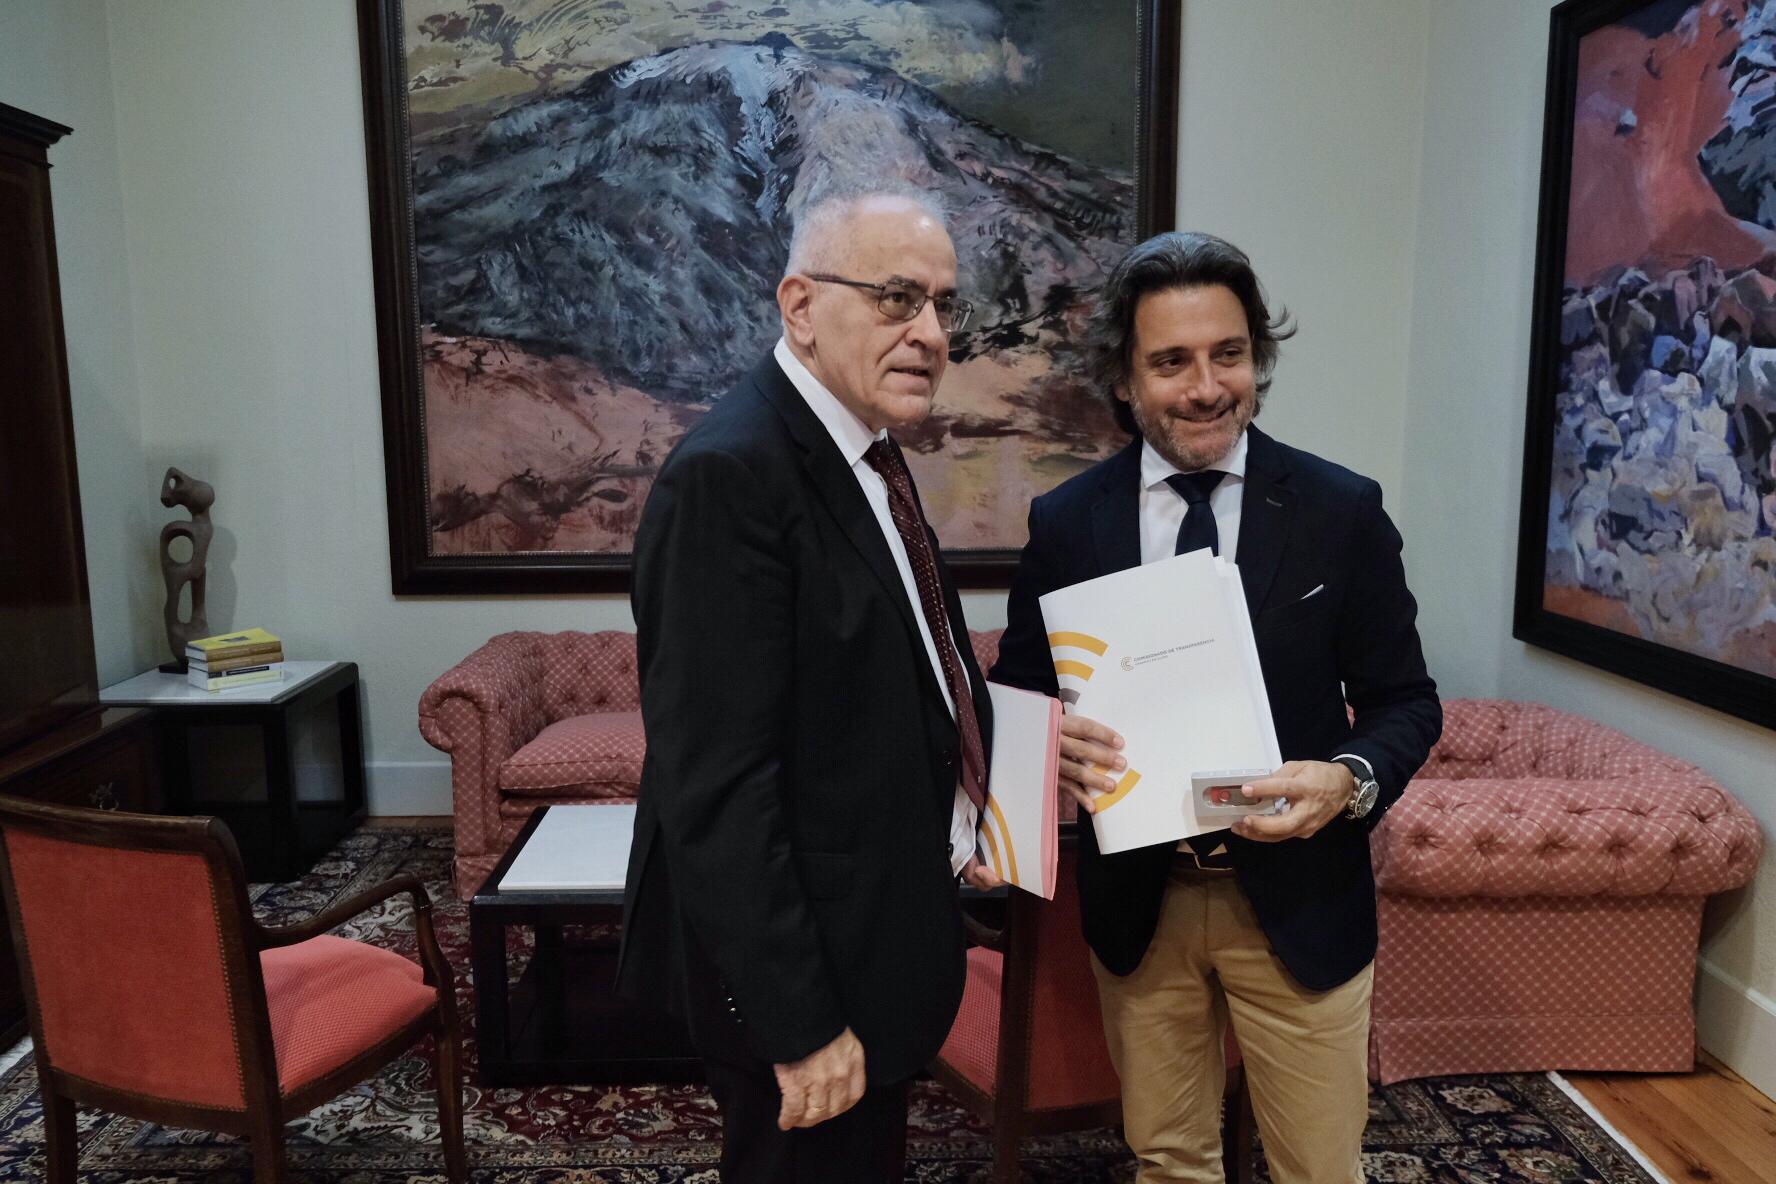 El presidente del Parlamento canario junto a Daniel Cerdán, Comisionado de Transparencia de Canarias